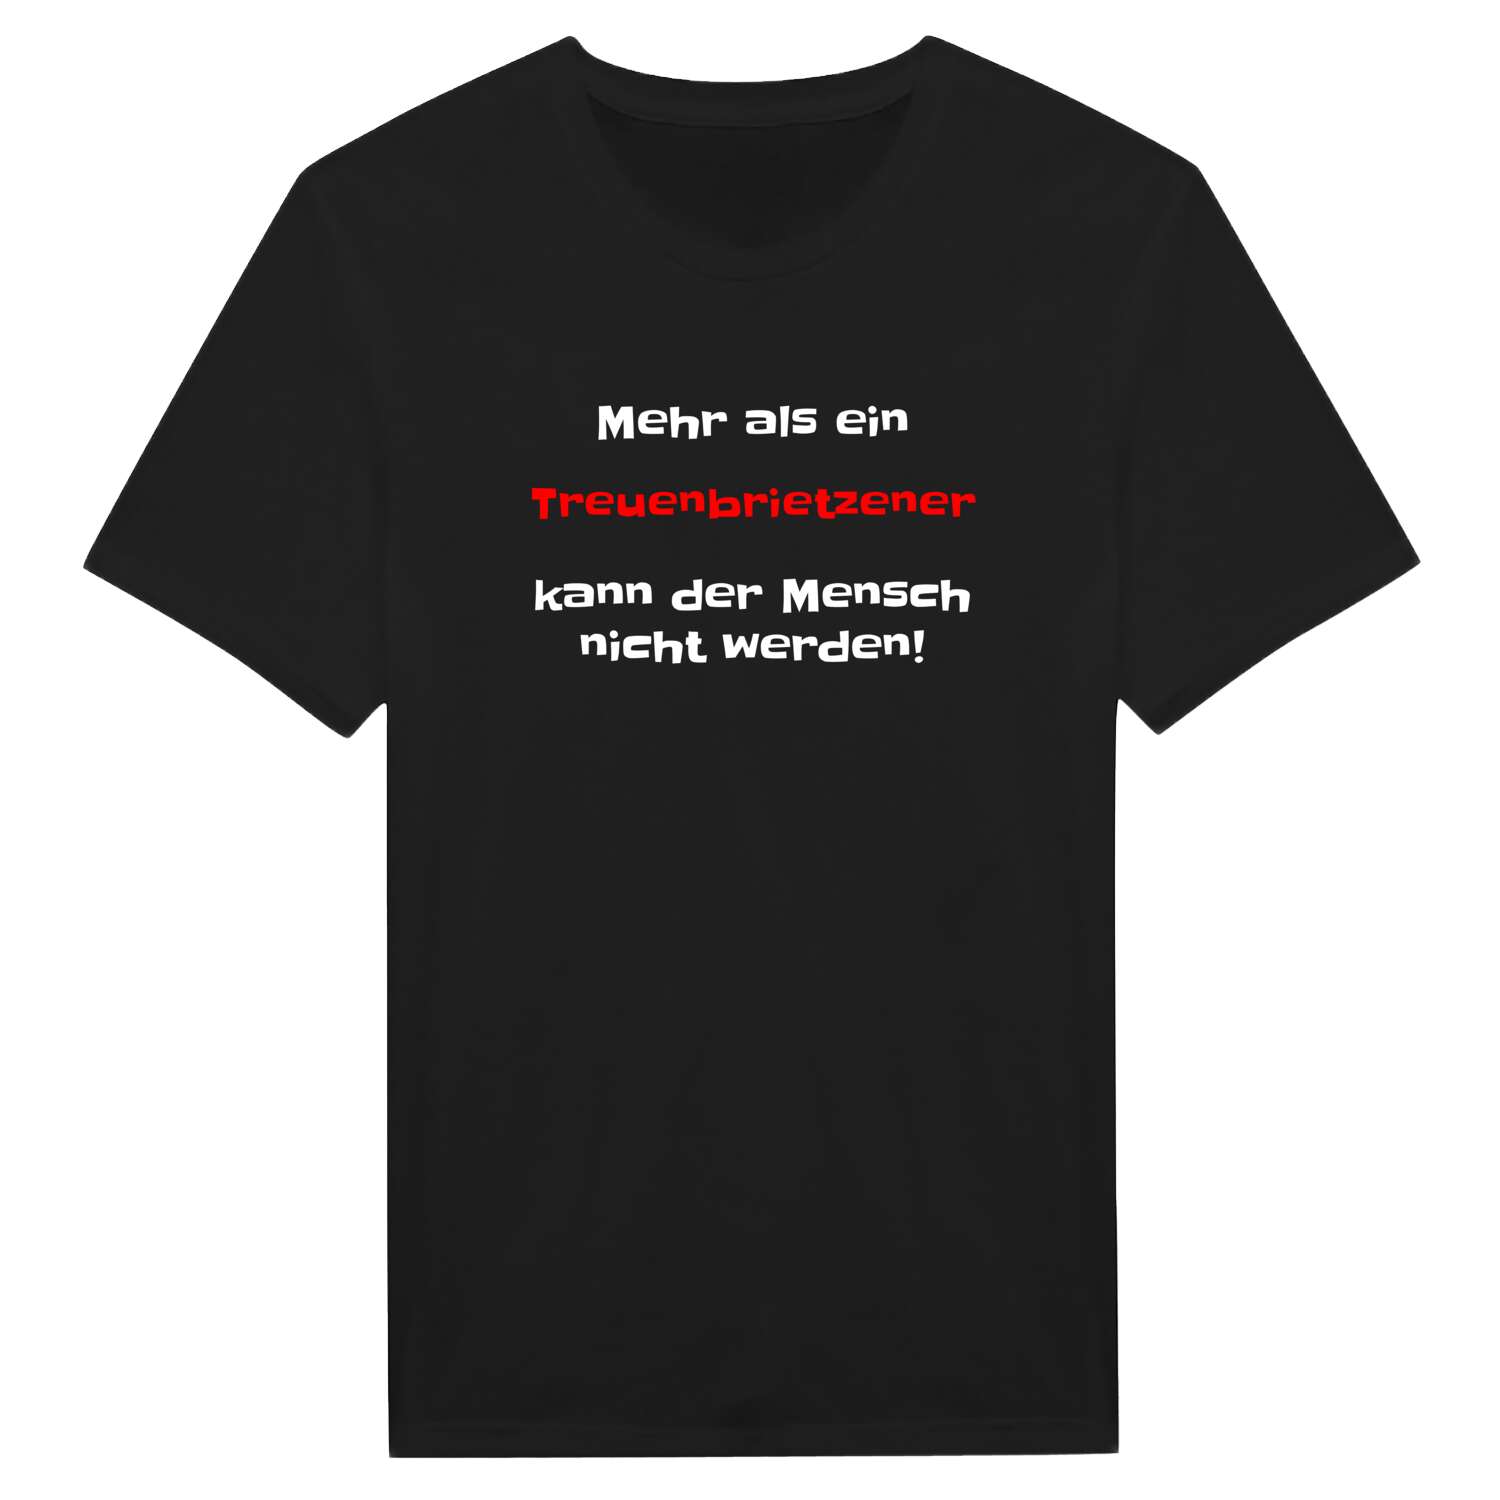 Treuenbrietzen T-Shirt »Mehr als ein«